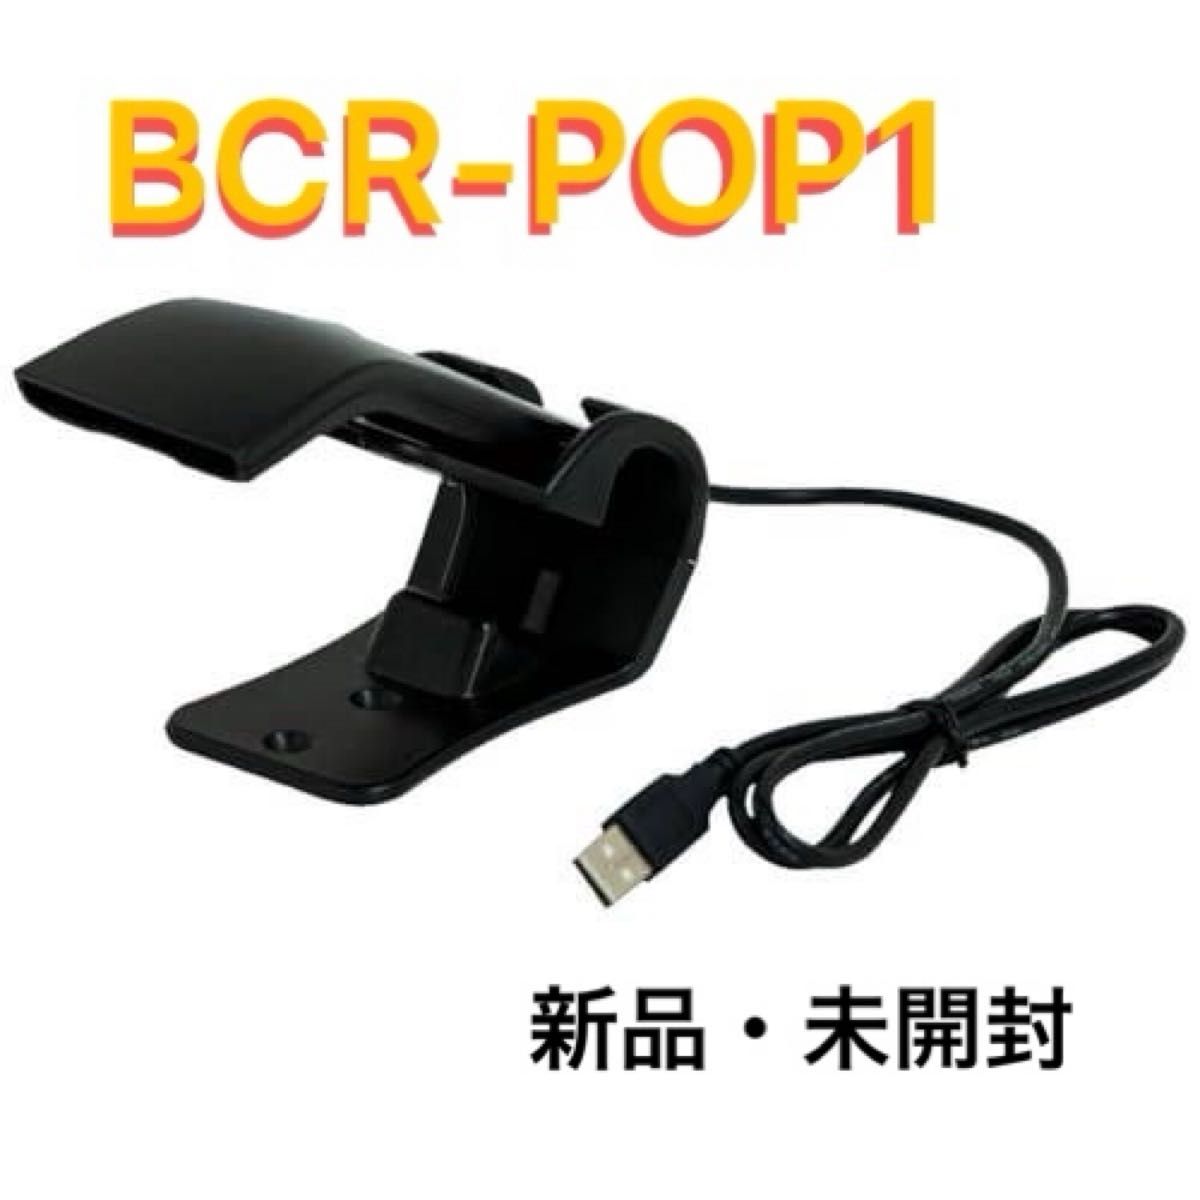 スター精密 有線式バーコードリーダー(バーコードスキャナー) BCR-POP1 BLK USB接続 ブラック